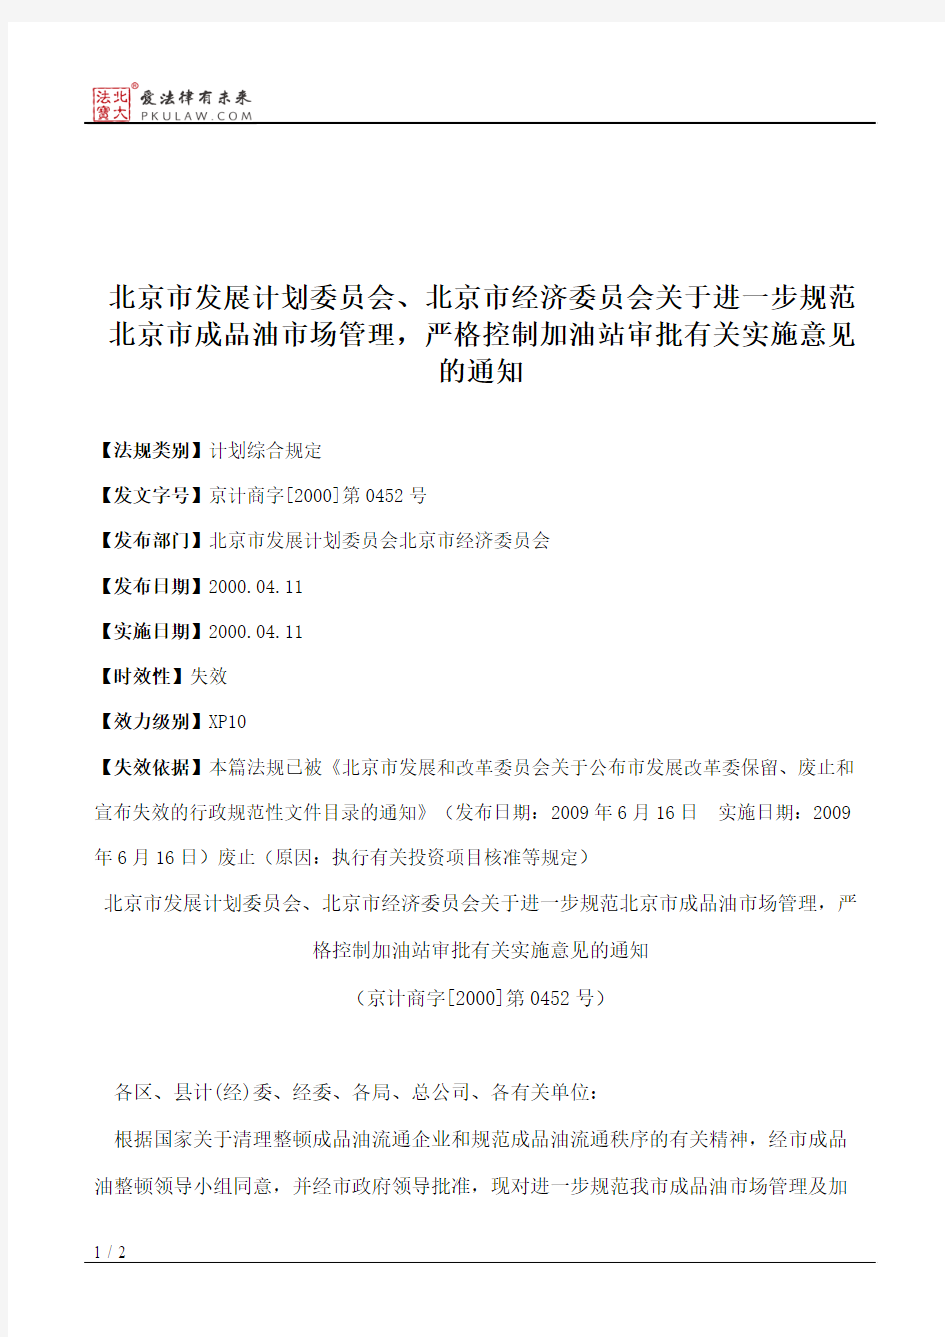 北京市发展计划委员会、北京市经济委员会关于进一步规范北京市成